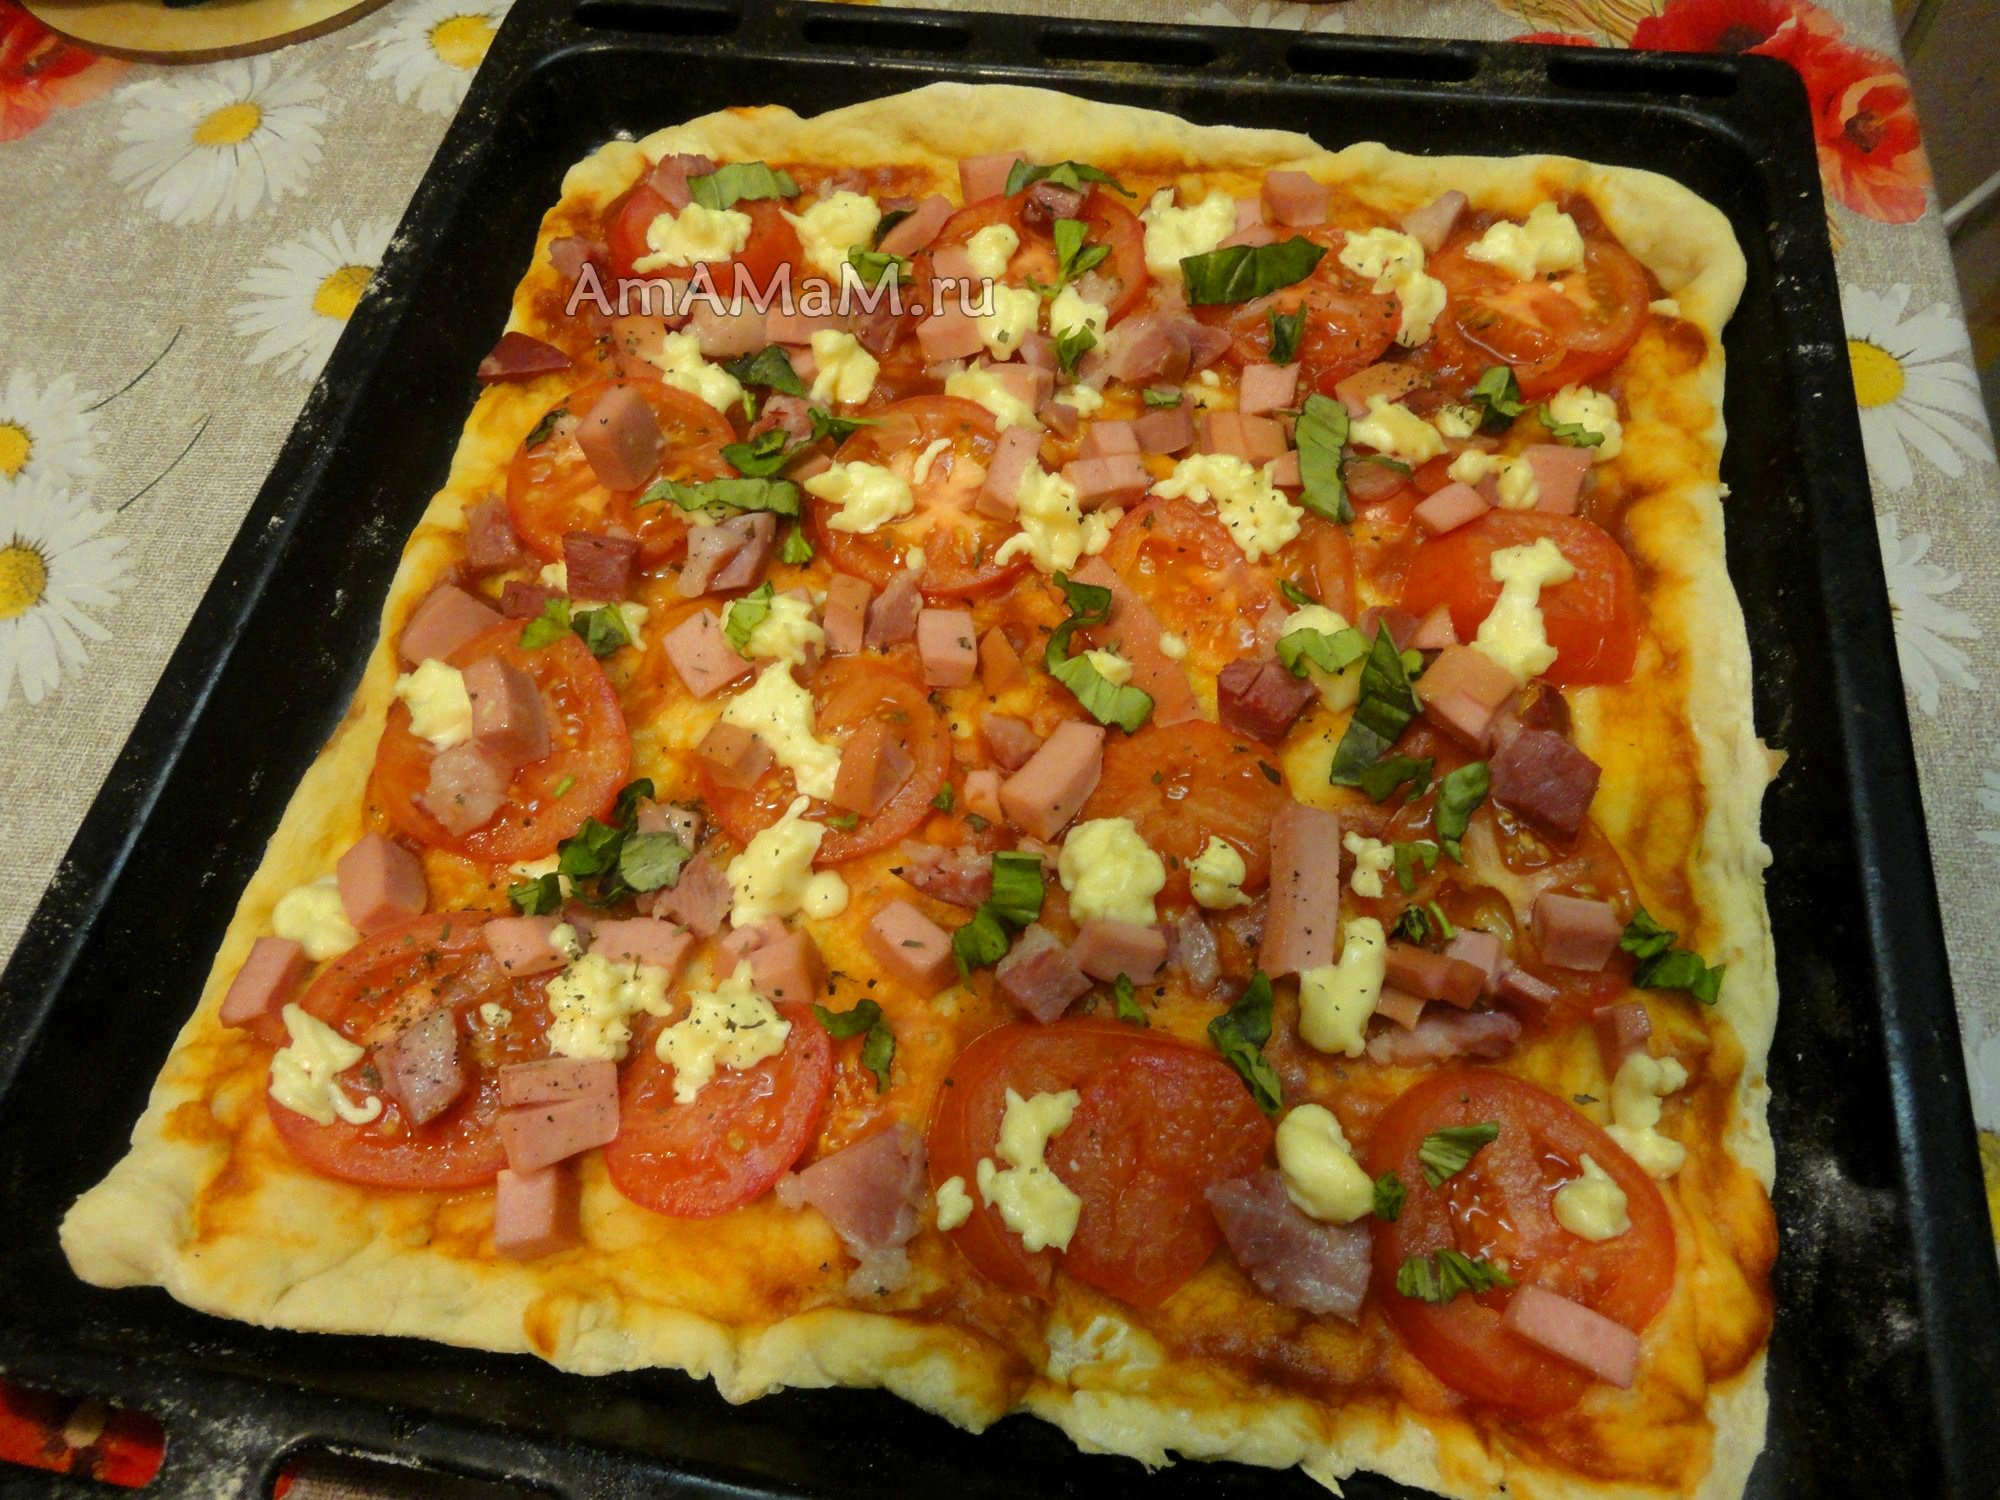 пицца домашняя в духовке рецепт приготовления пошагово с фото фото 112